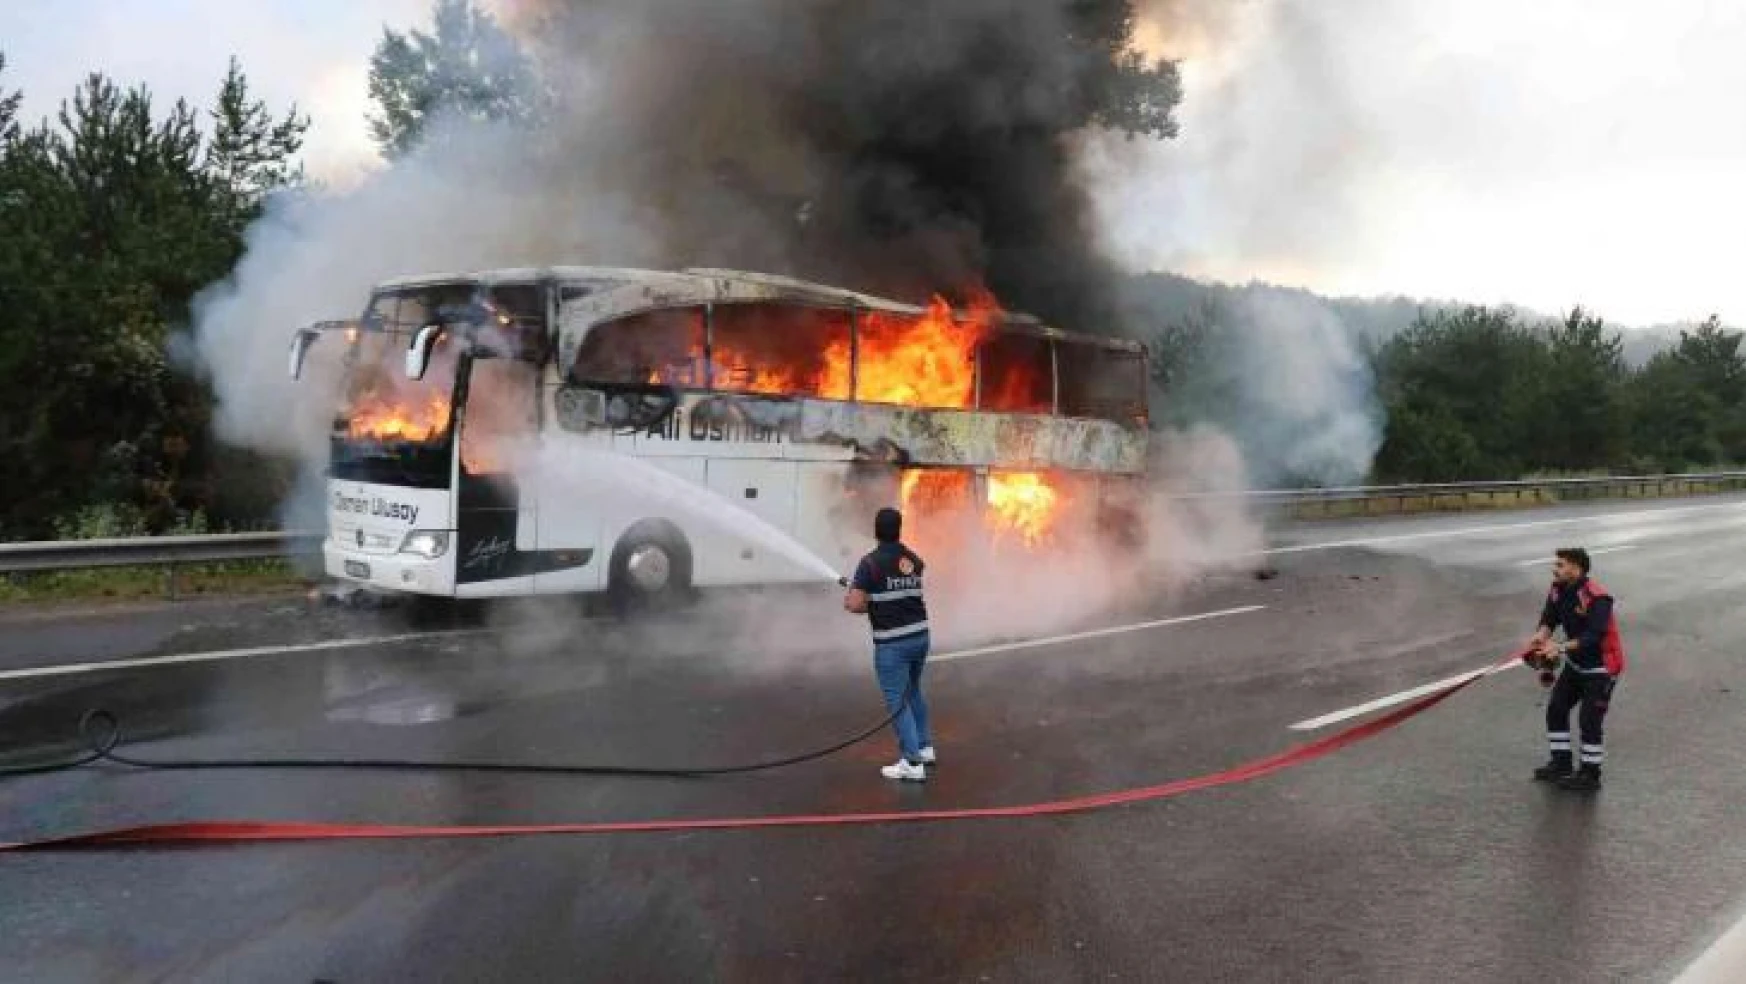 TEM'de yolcu otobüsü alev alev yandı